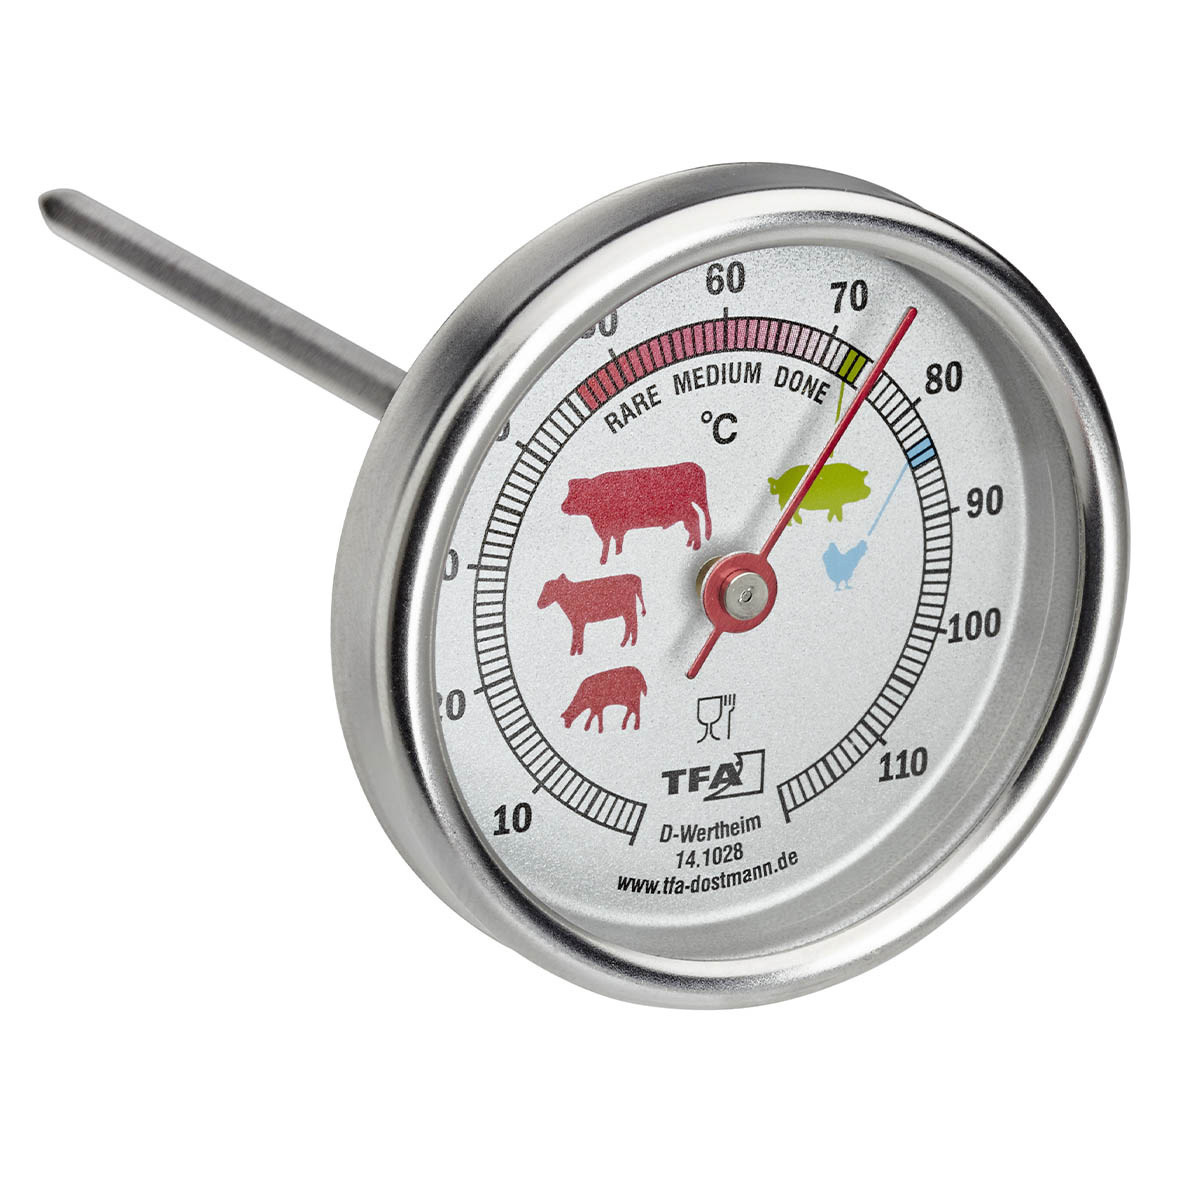 Was es bei dem Bestellen die Design thermometer zu bewerten gibt